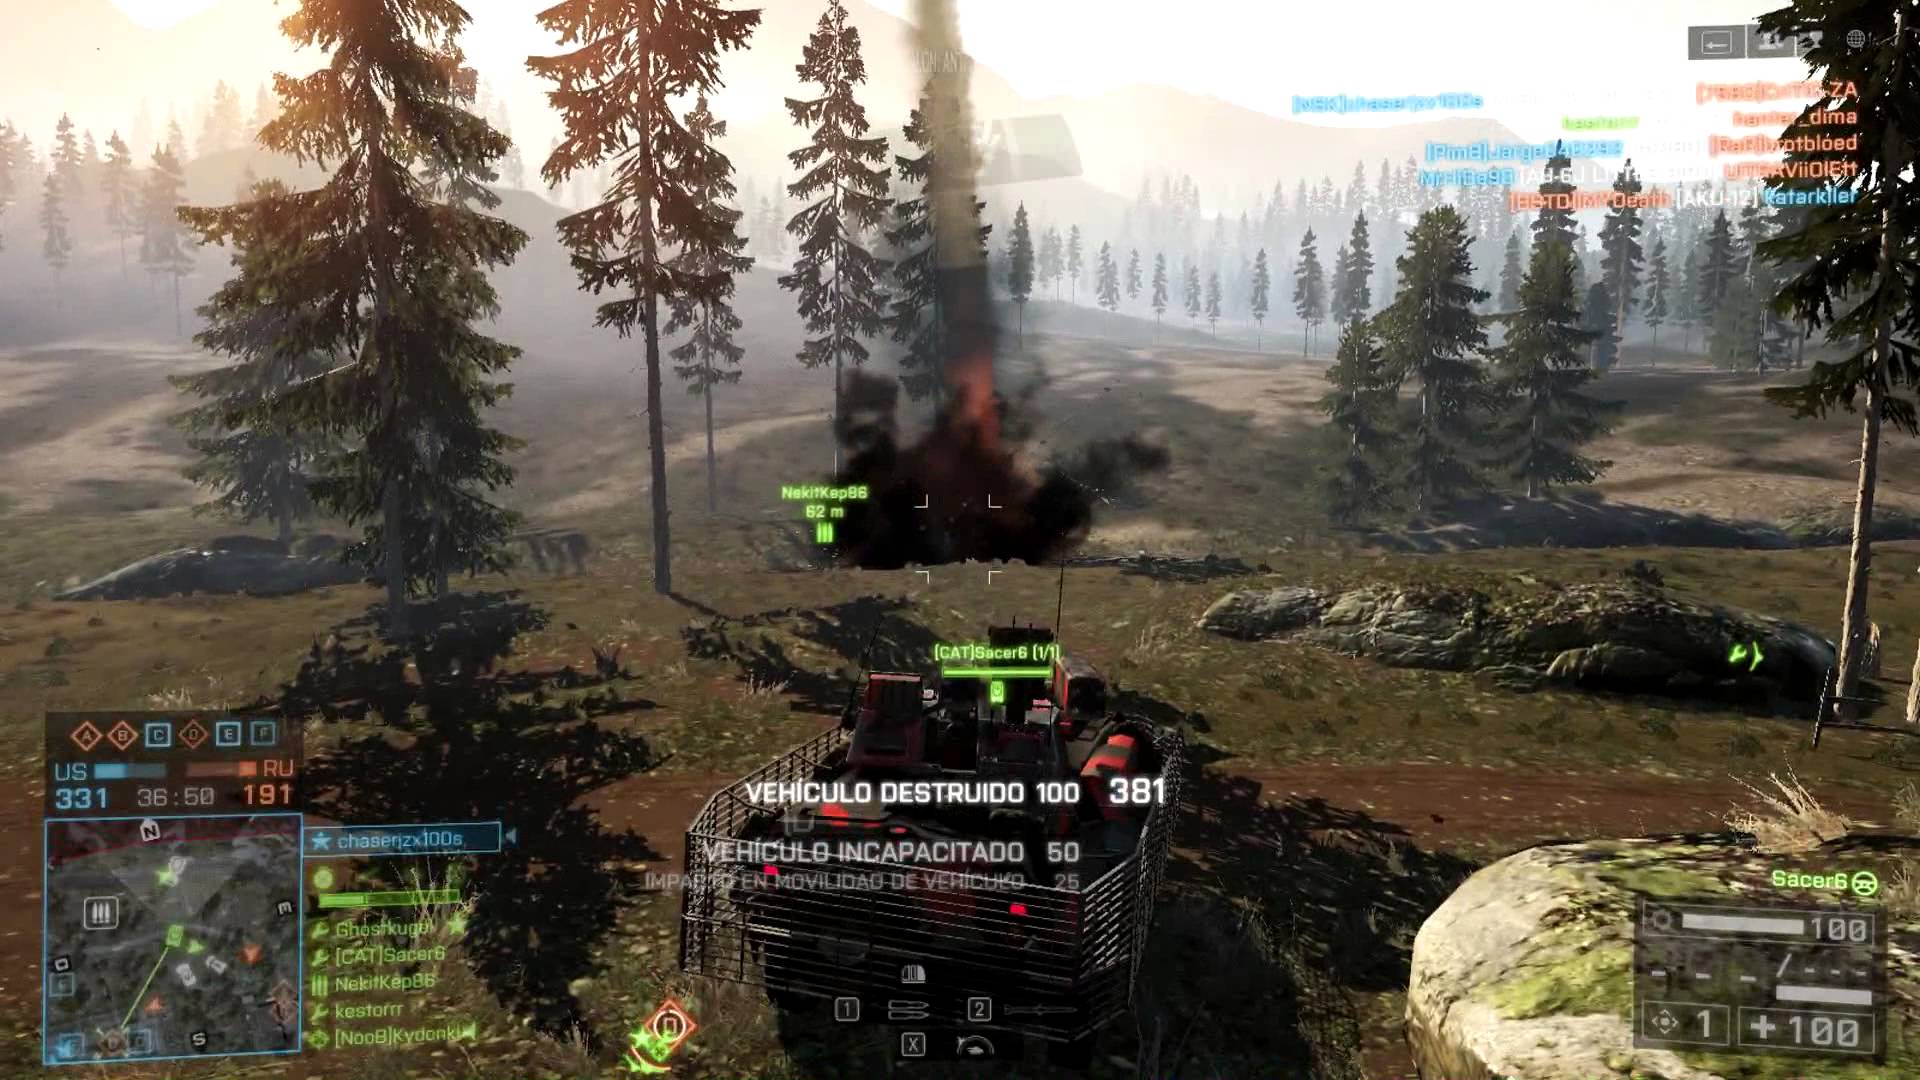 Partida per trencar amb la rutina a Battlefield 4 de PlaVipCat